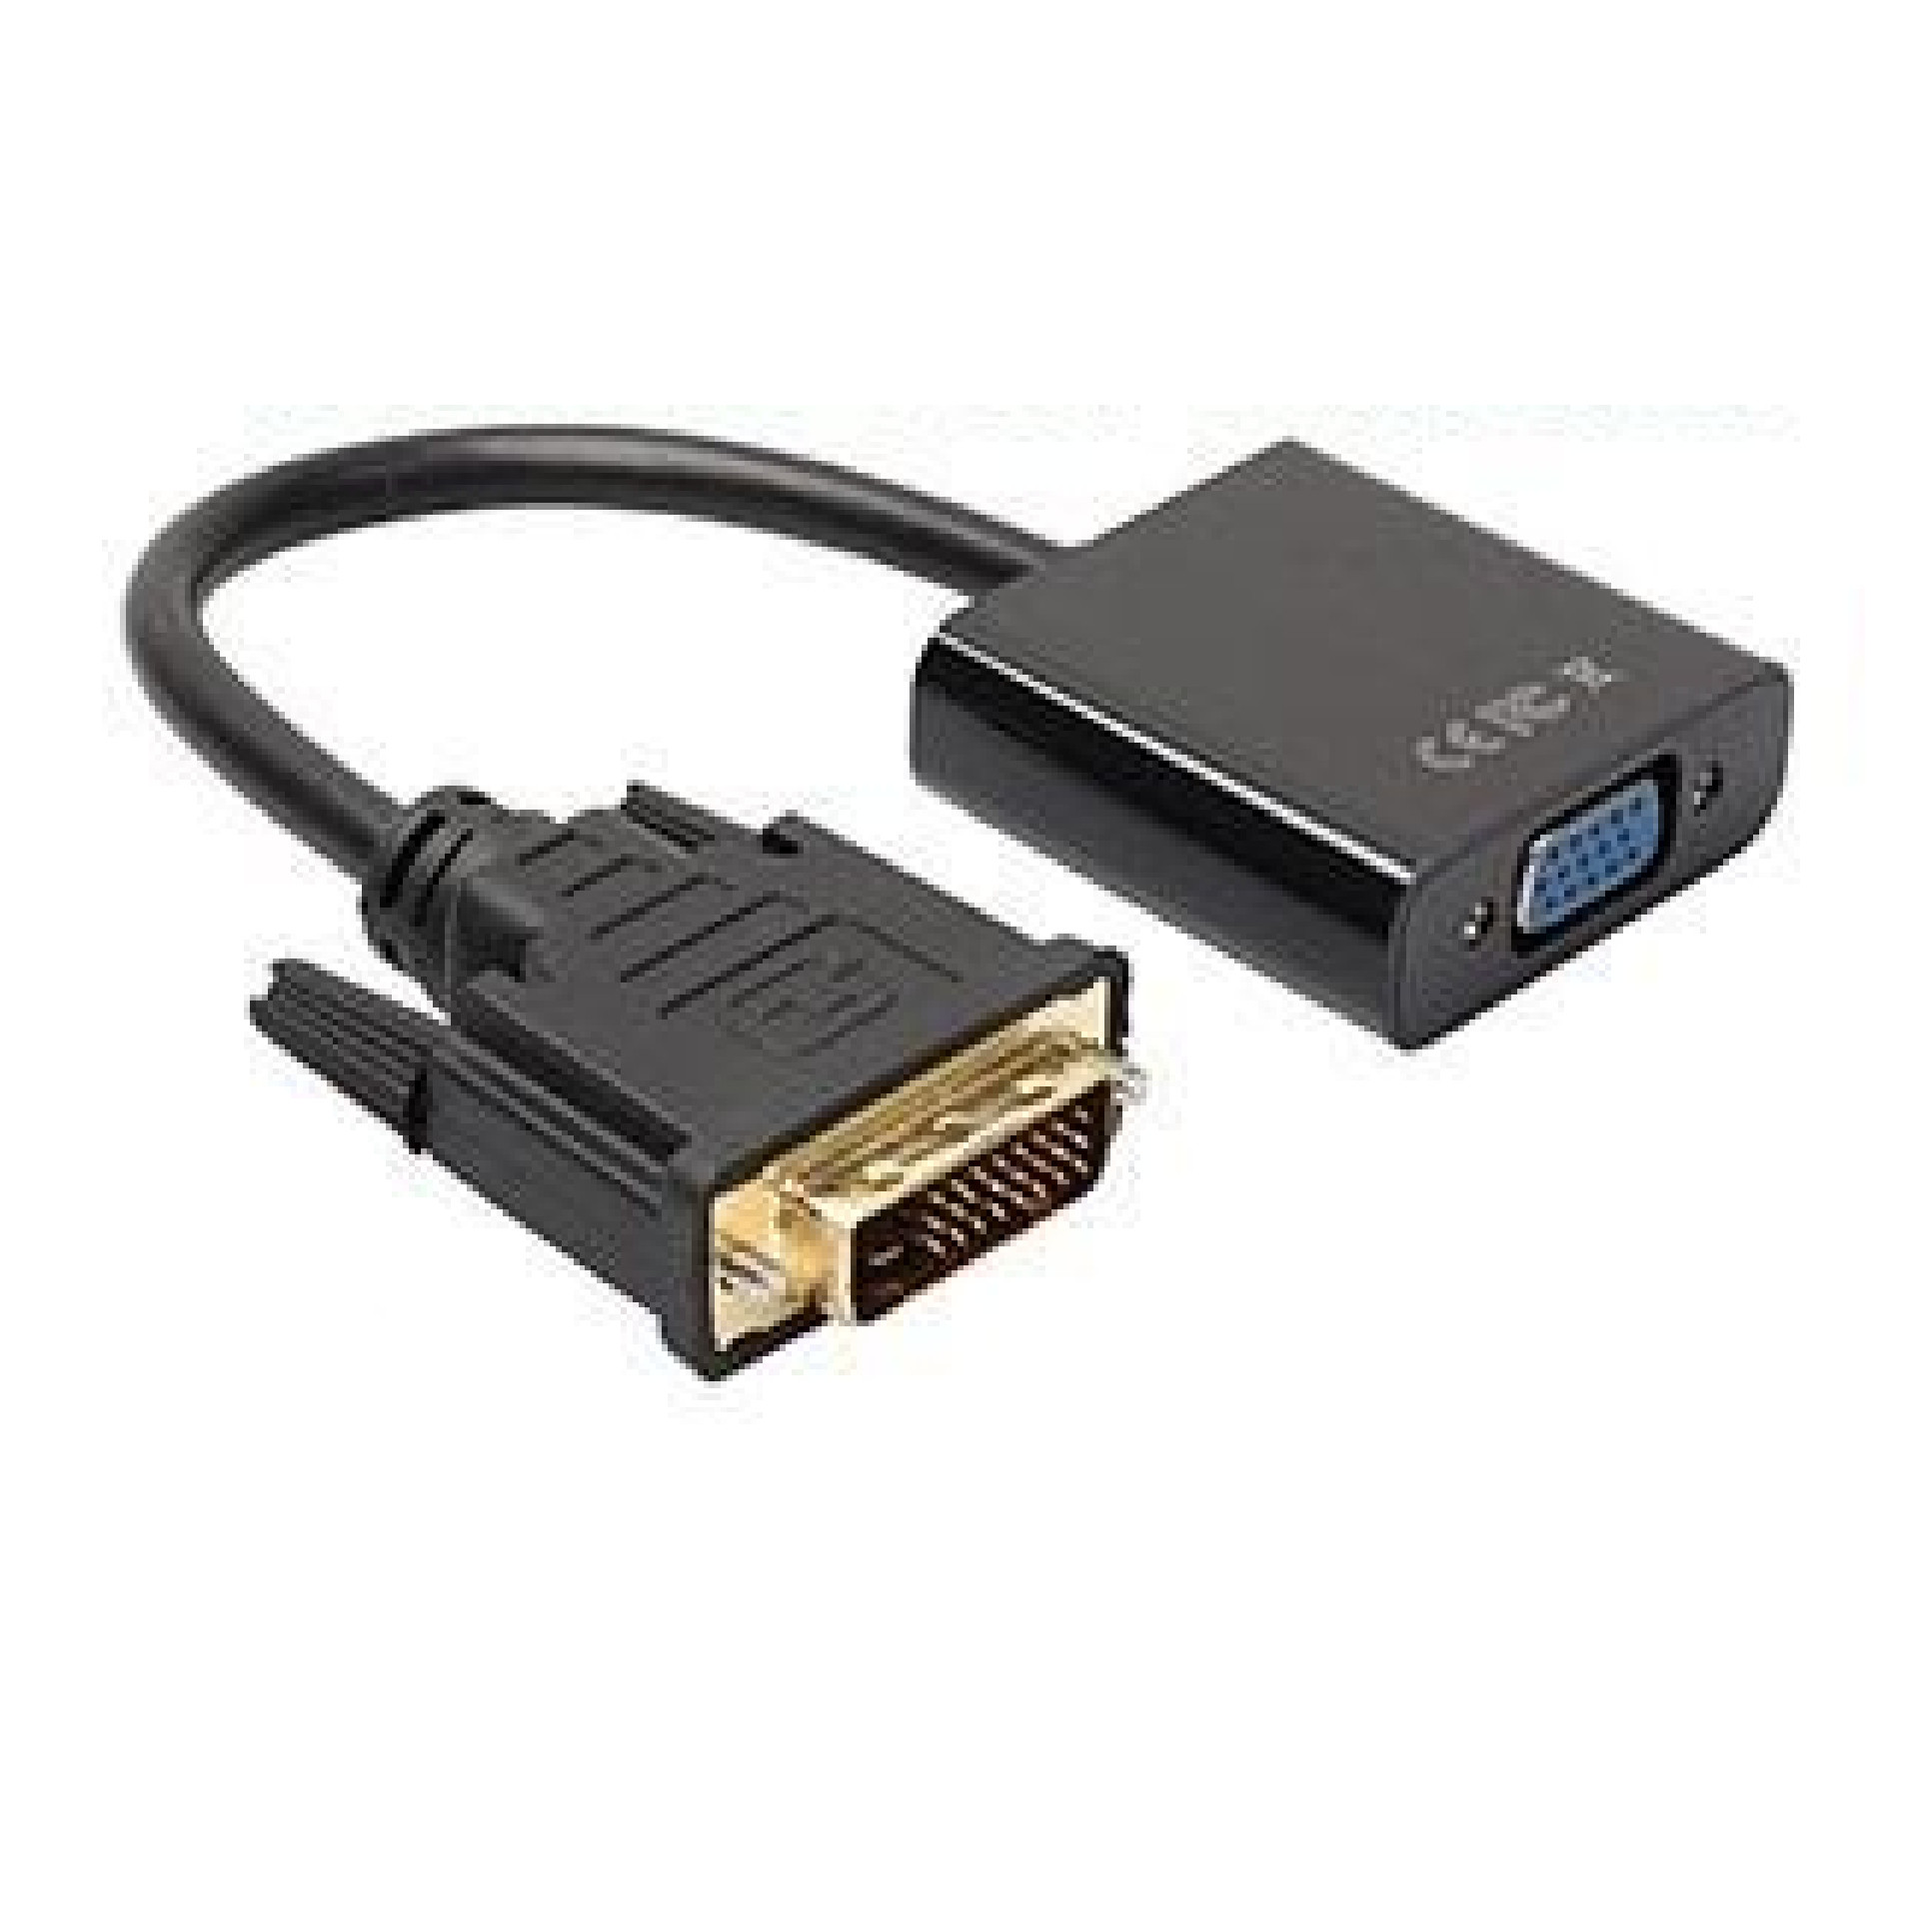 Cáp (Cable) chuyển DVI ra VGA (24+1) - Hàng  hập khẩu